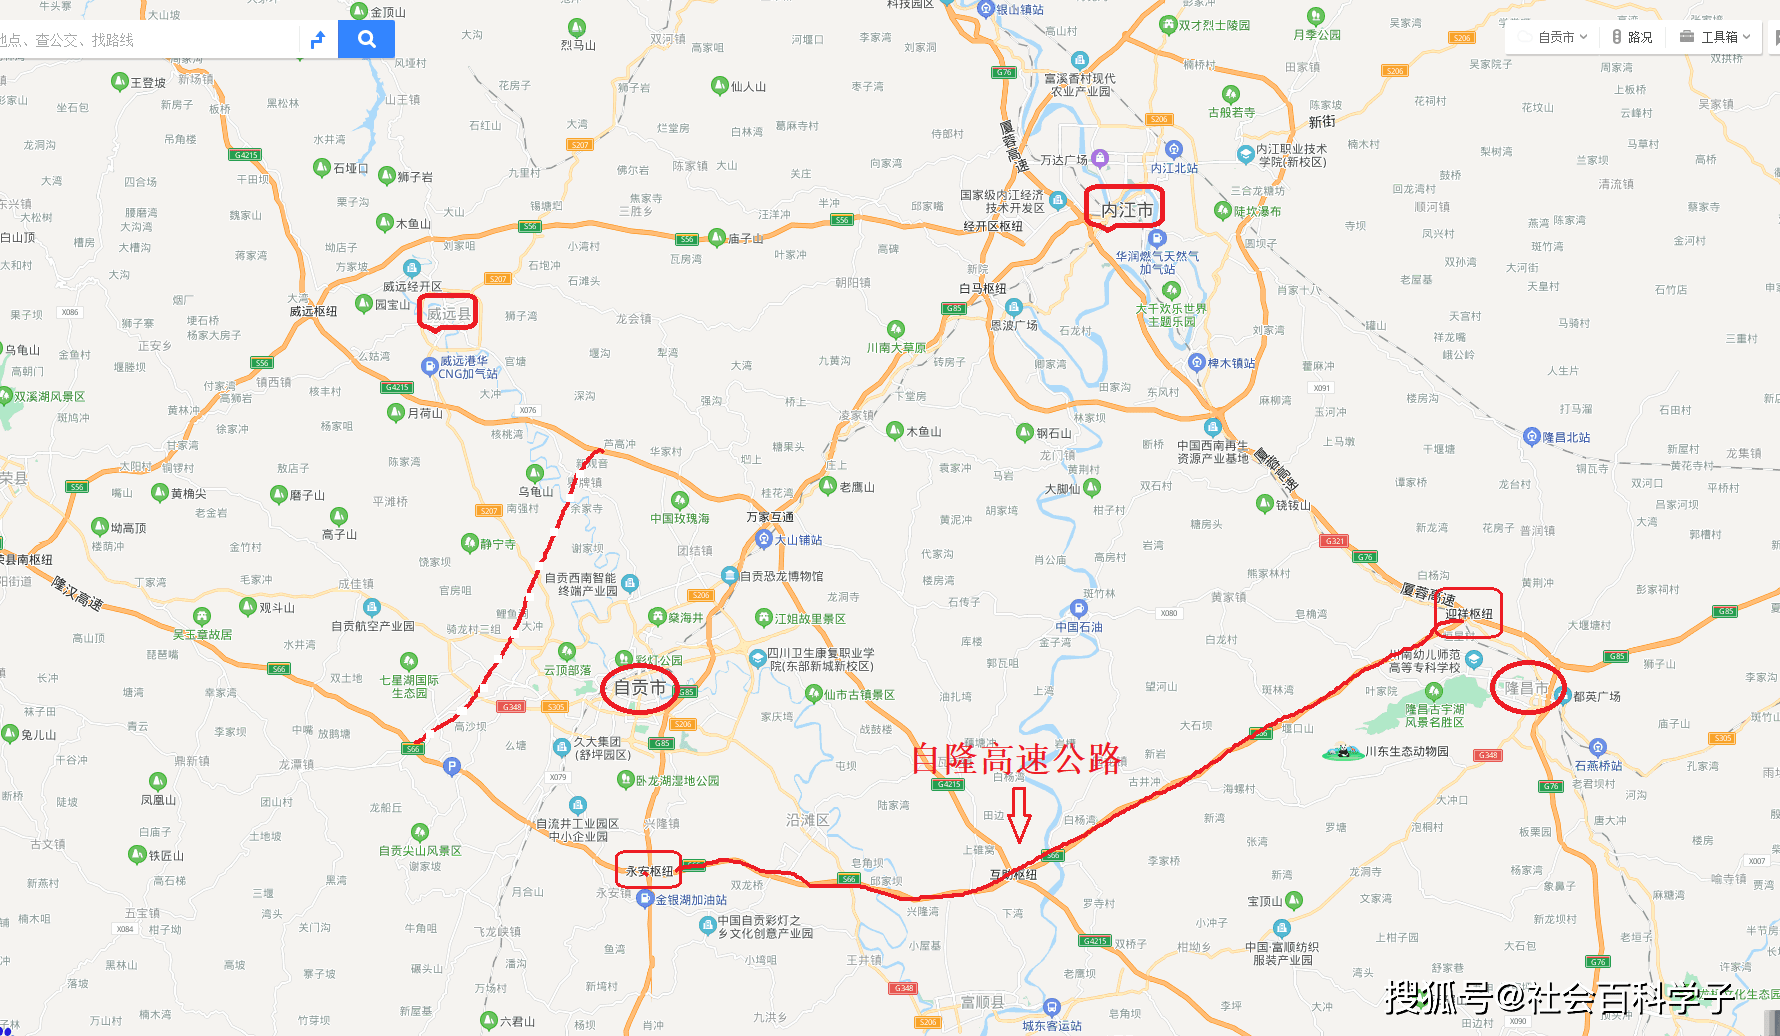 自隆高速公路连接线,更好引领自内同城化_自贡市